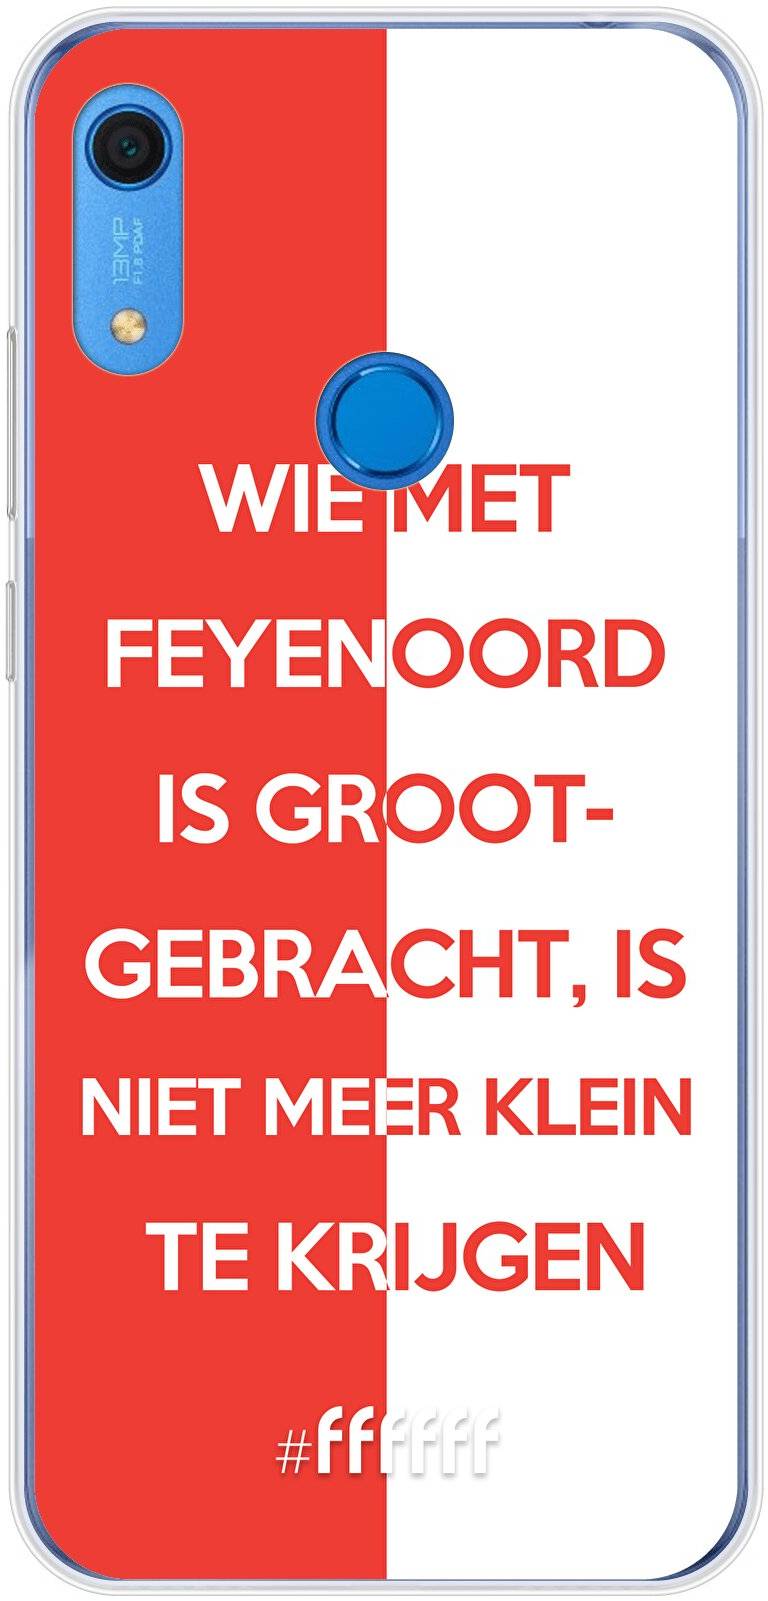 Feyenoord - Grootgebracht Y6 (2019)